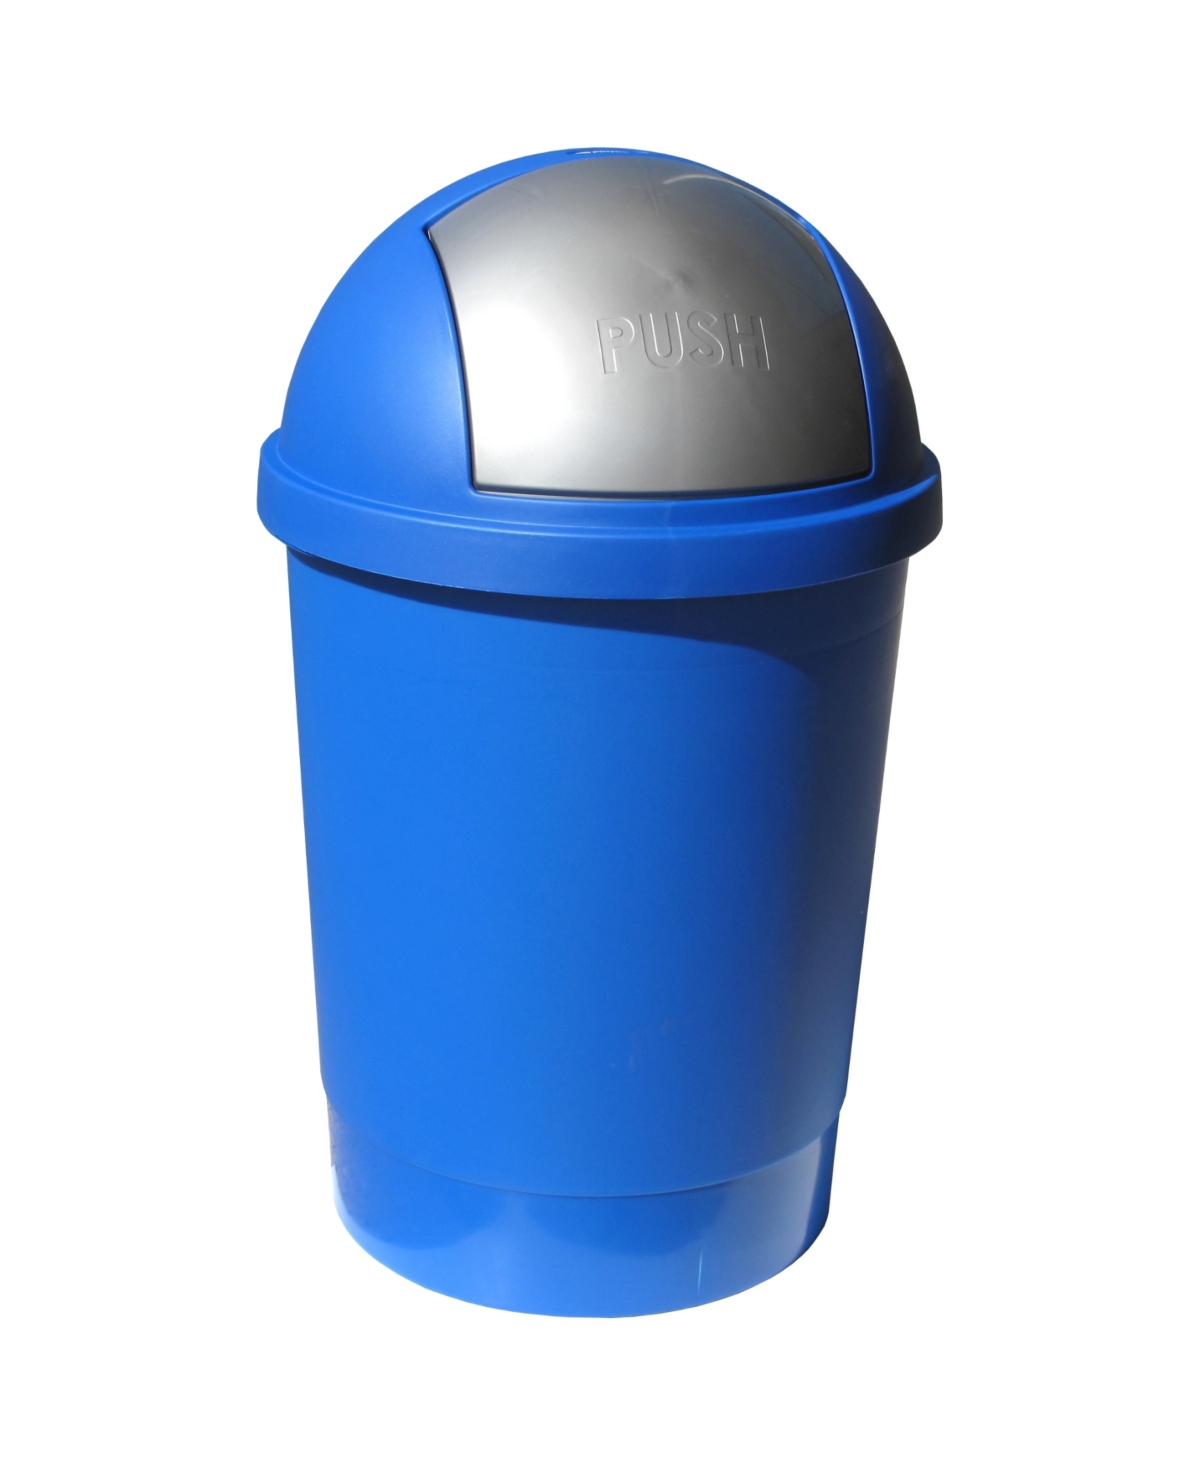 13.2 Gallon Swivel Lid Waste Bin - Blue